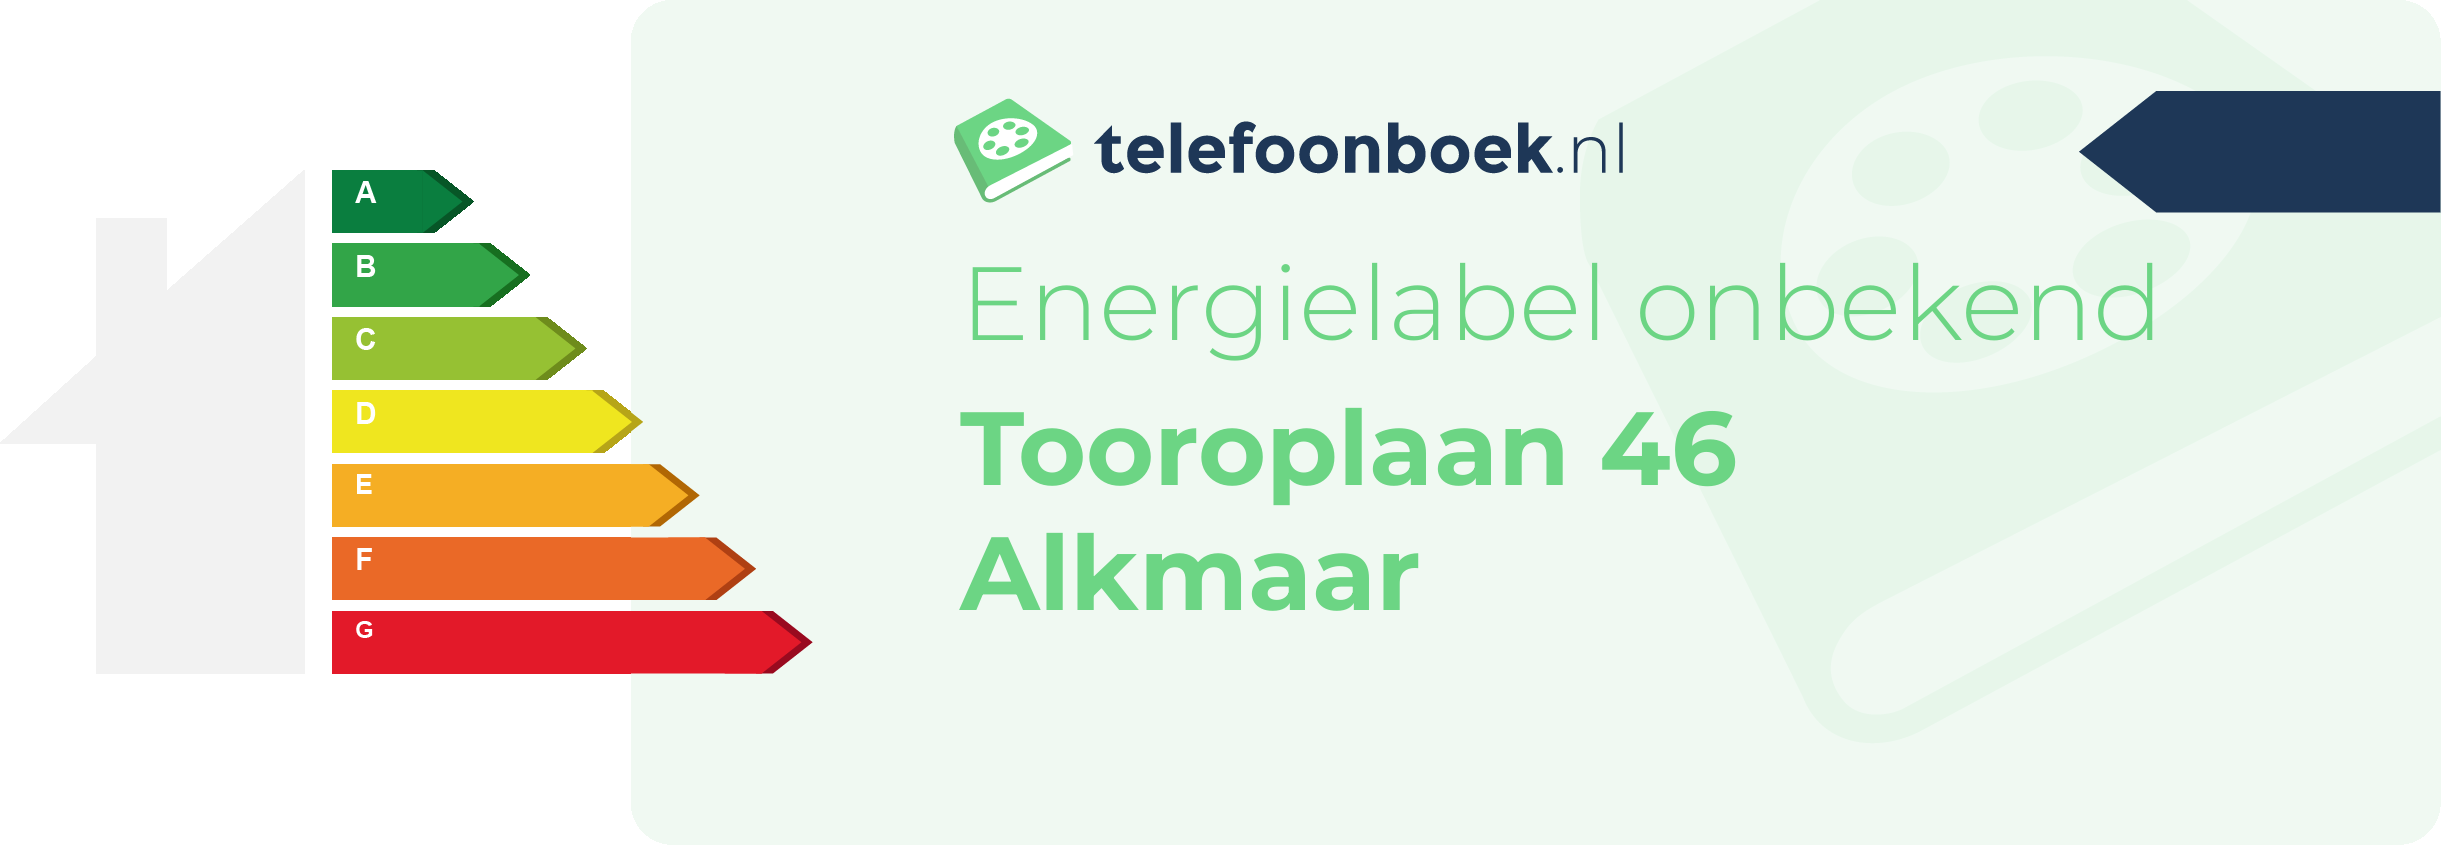 Energielabel Tooroplaan 46 Alkmaar